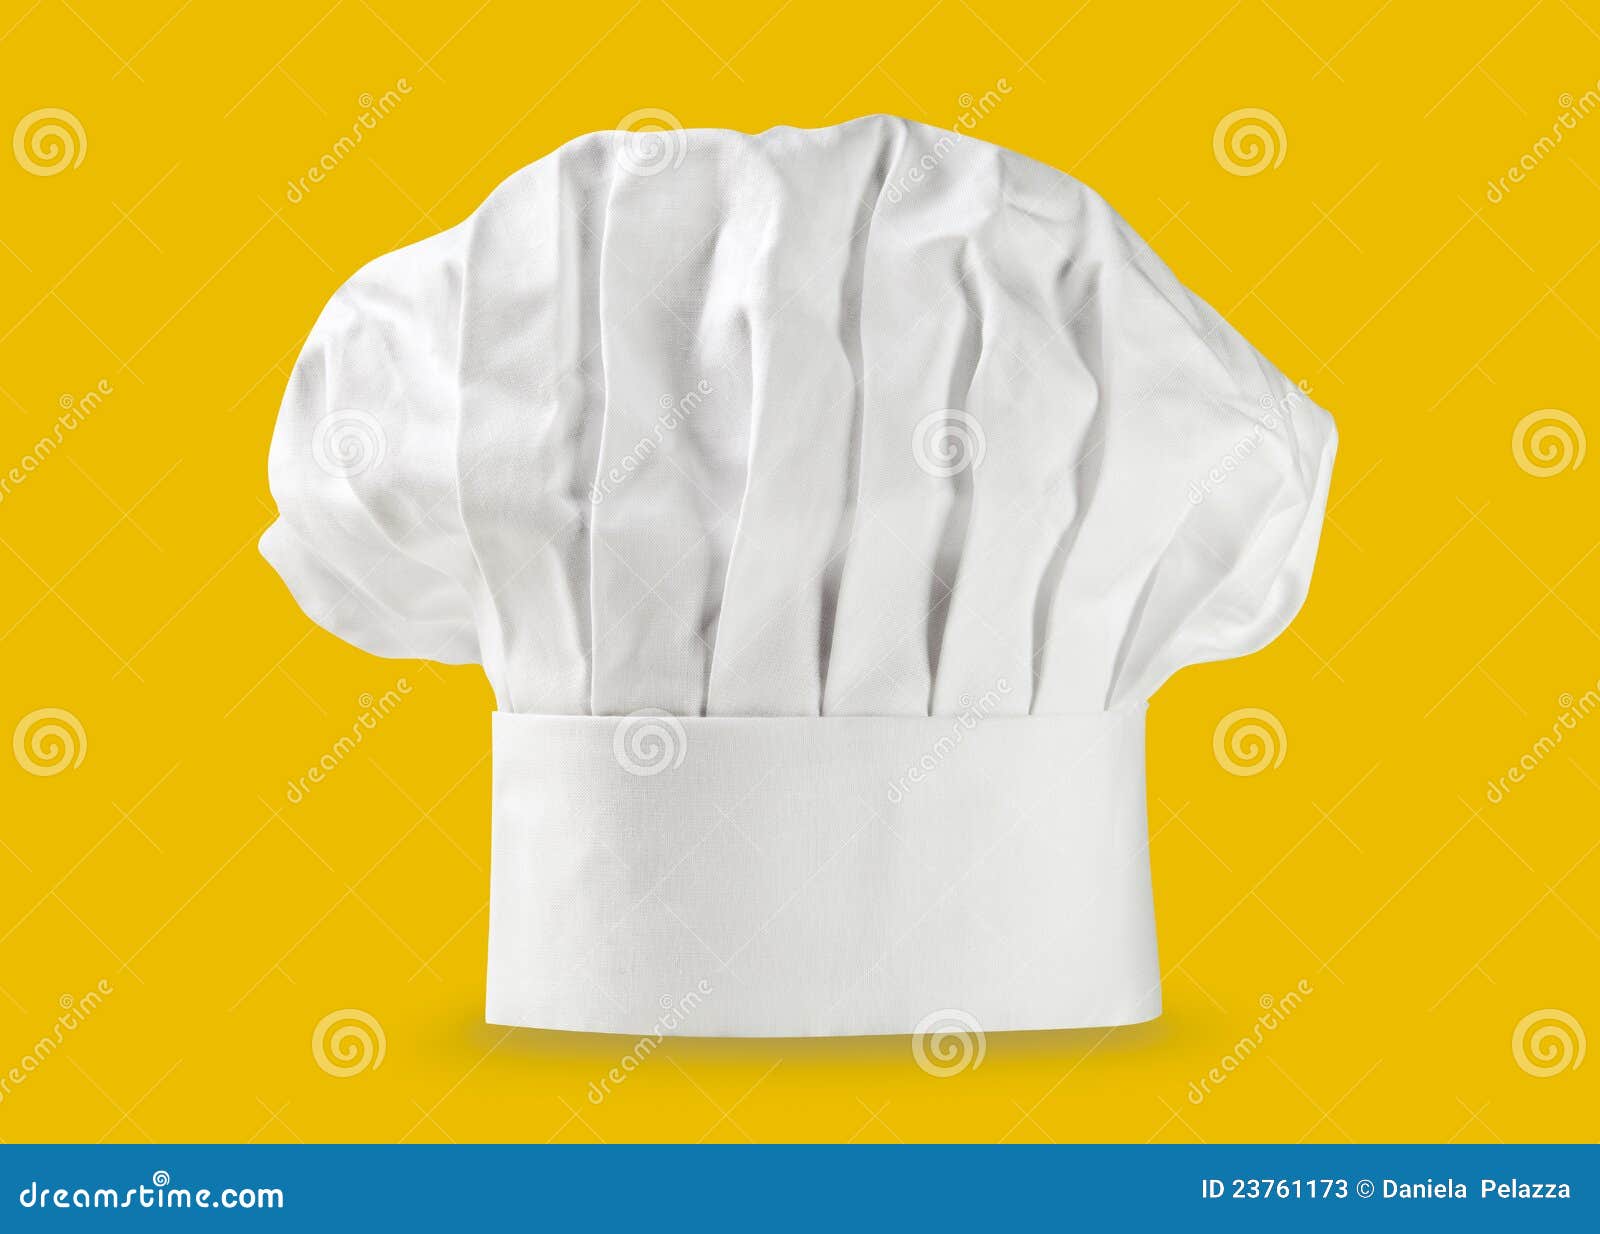 chef hat or toque